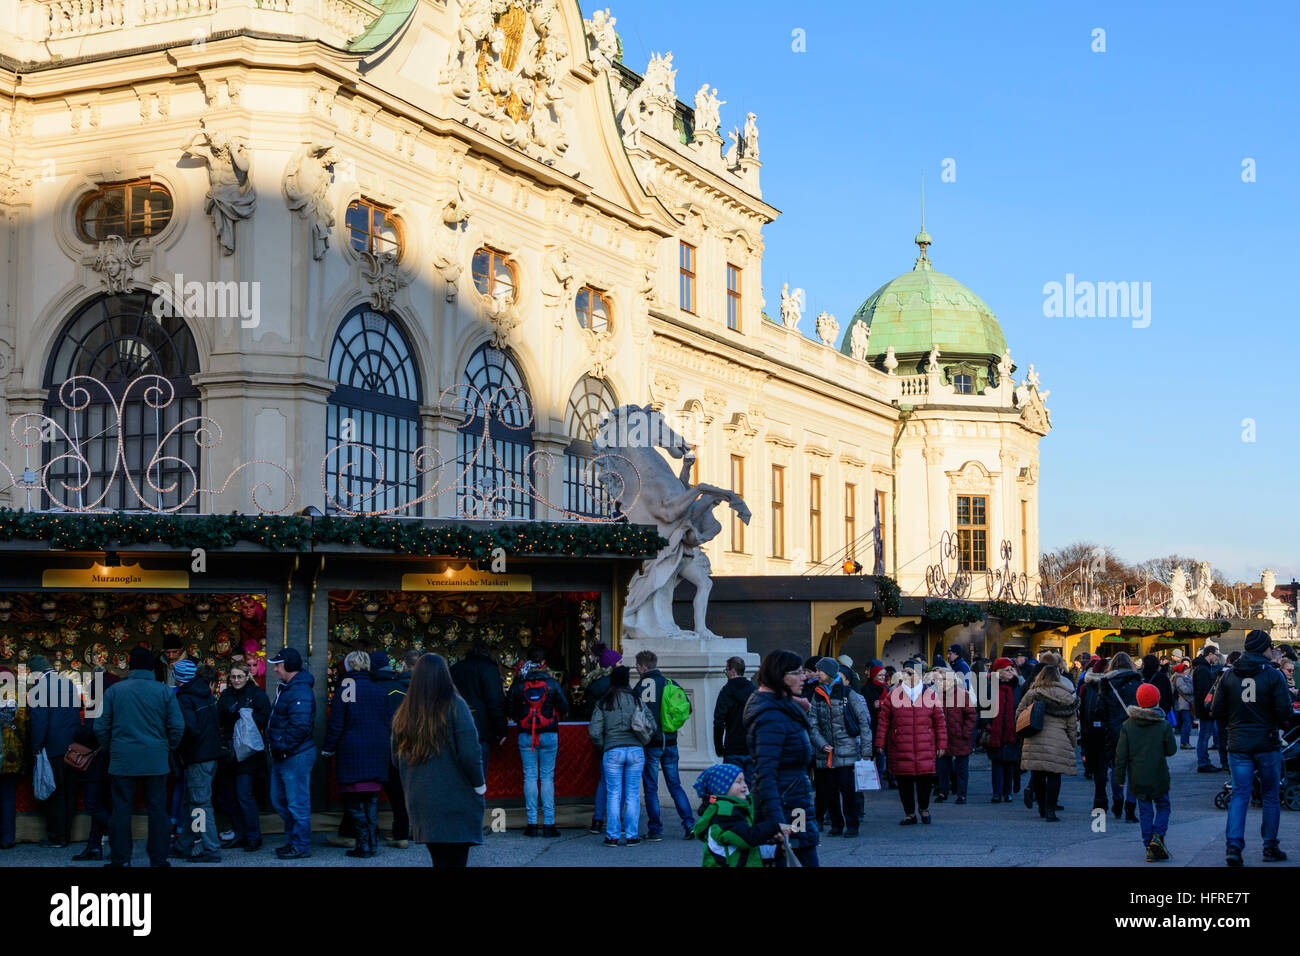 Wien, Vienne : Marché de Noël au palais du Belvédère, Vienne, Autriche Banque D'Images